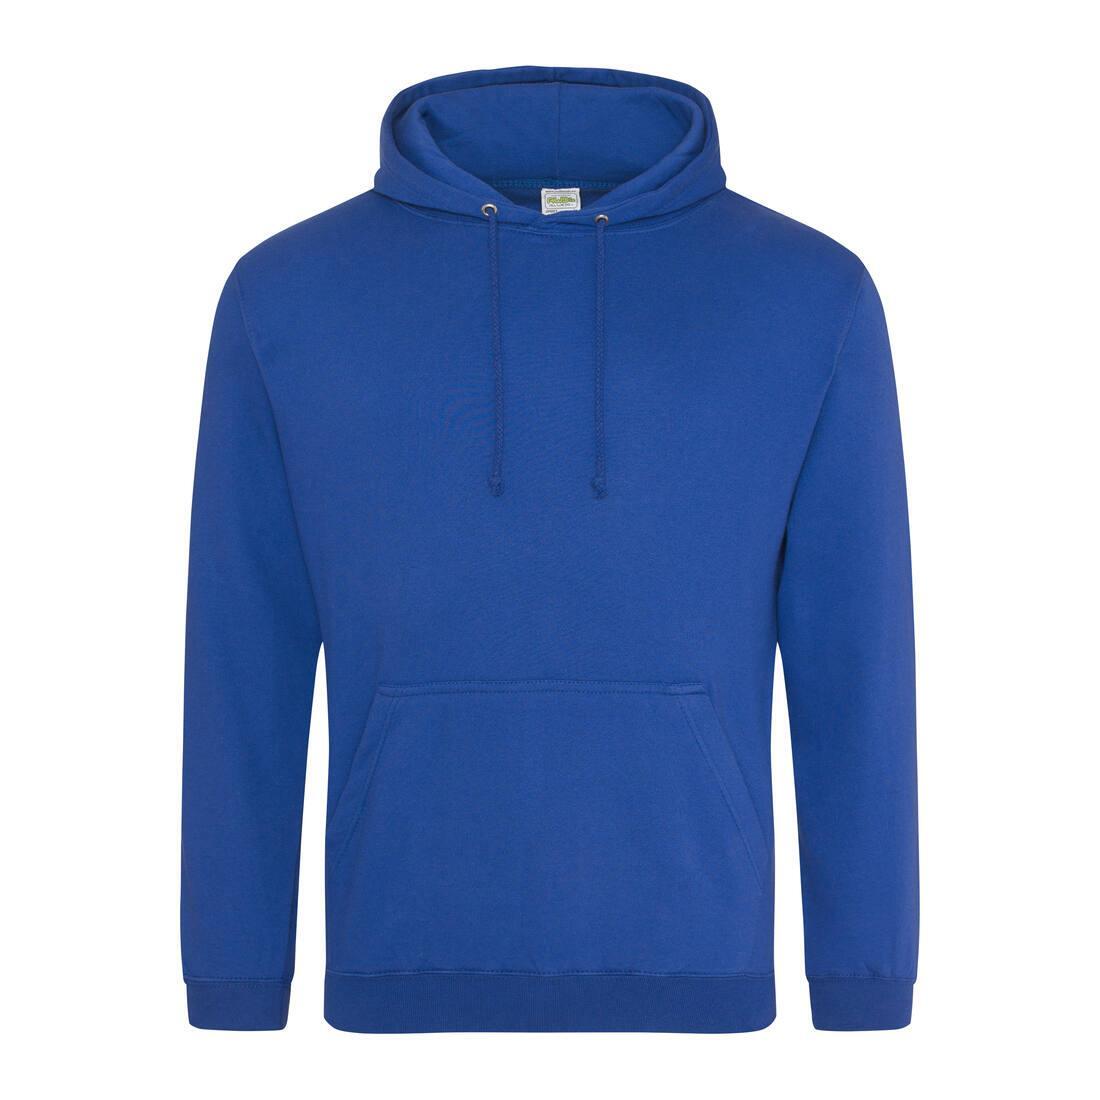 Heren hoodie royal blauw perfect voor bedrukking van logo, tekst, foto